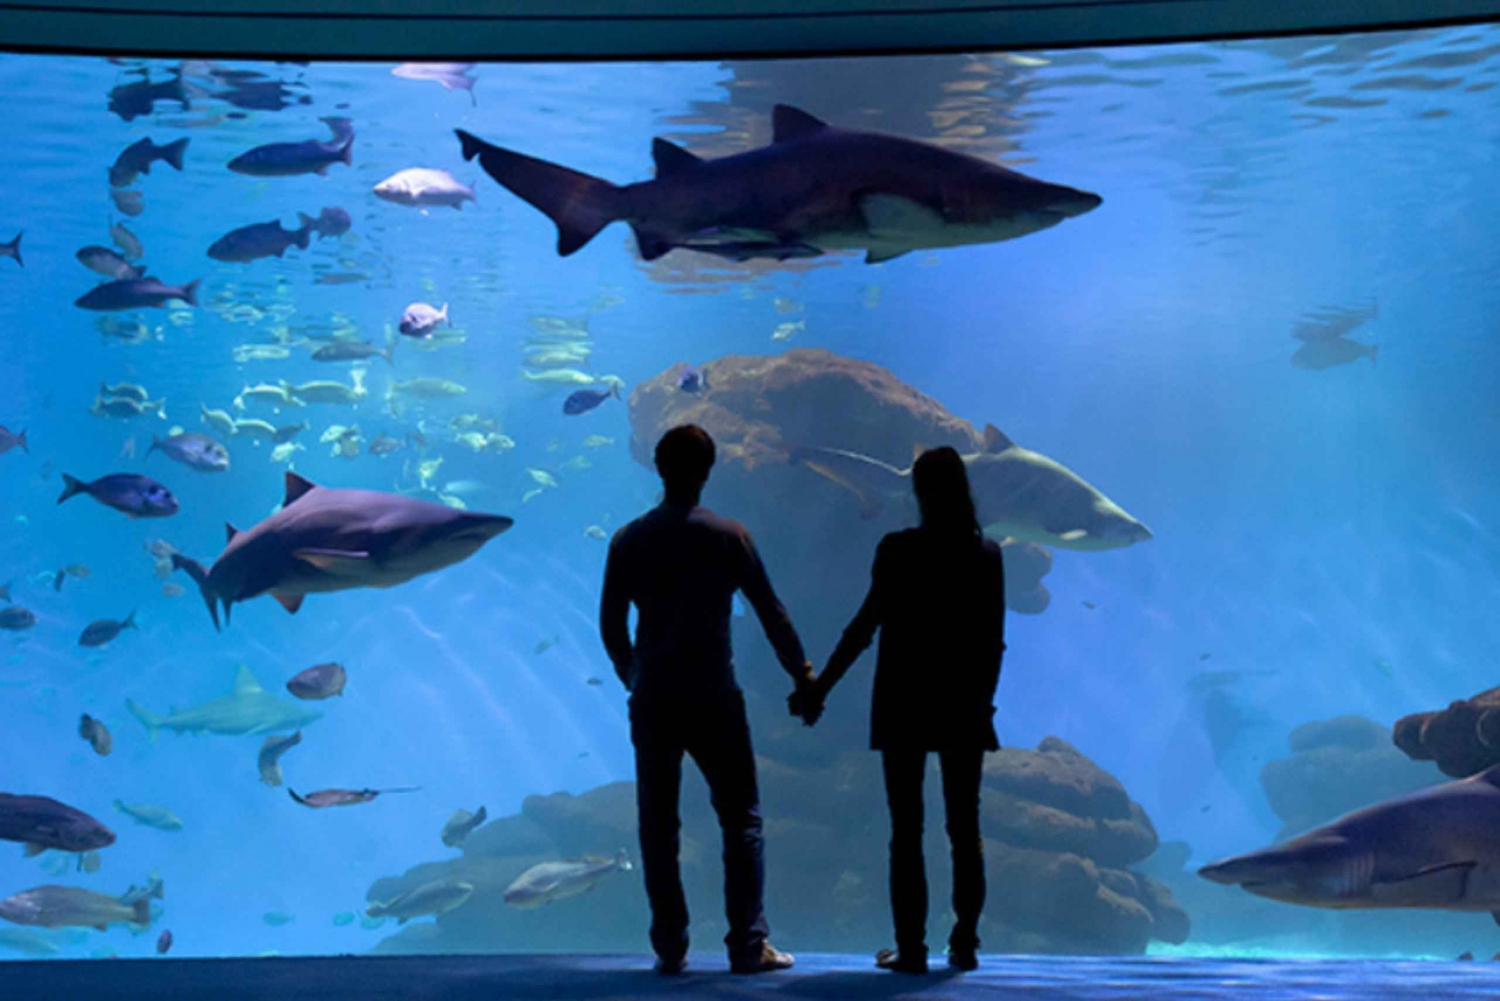 Palma : Billet pour l'aquarium de Palma avec service de transfert